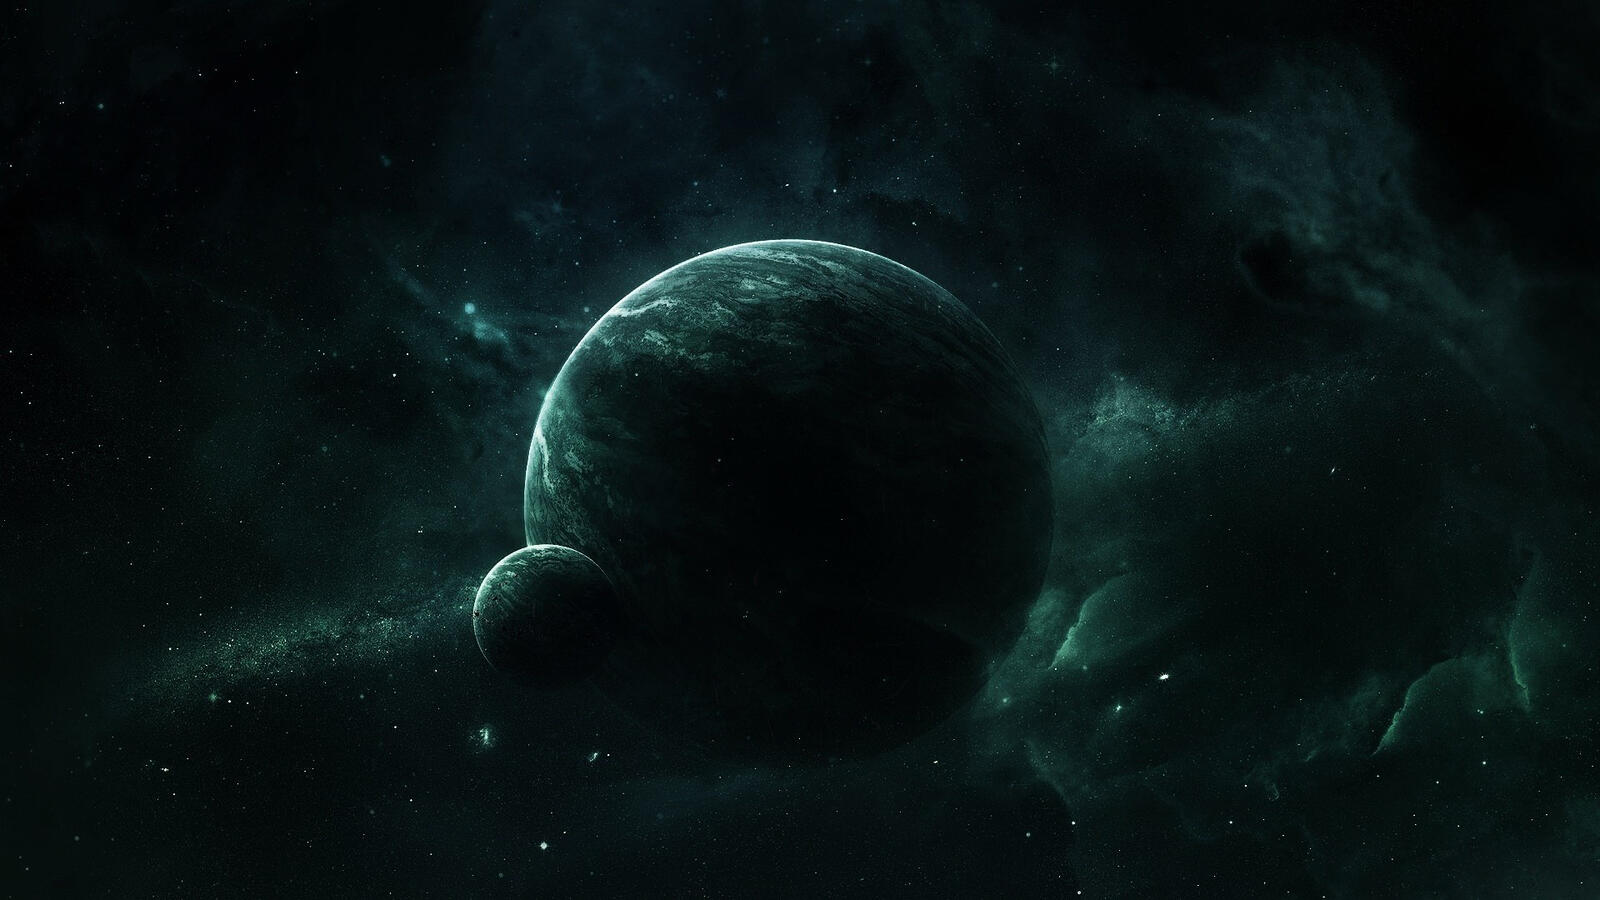 Бесплатное фото Планетарная туманность с планетой и спутником